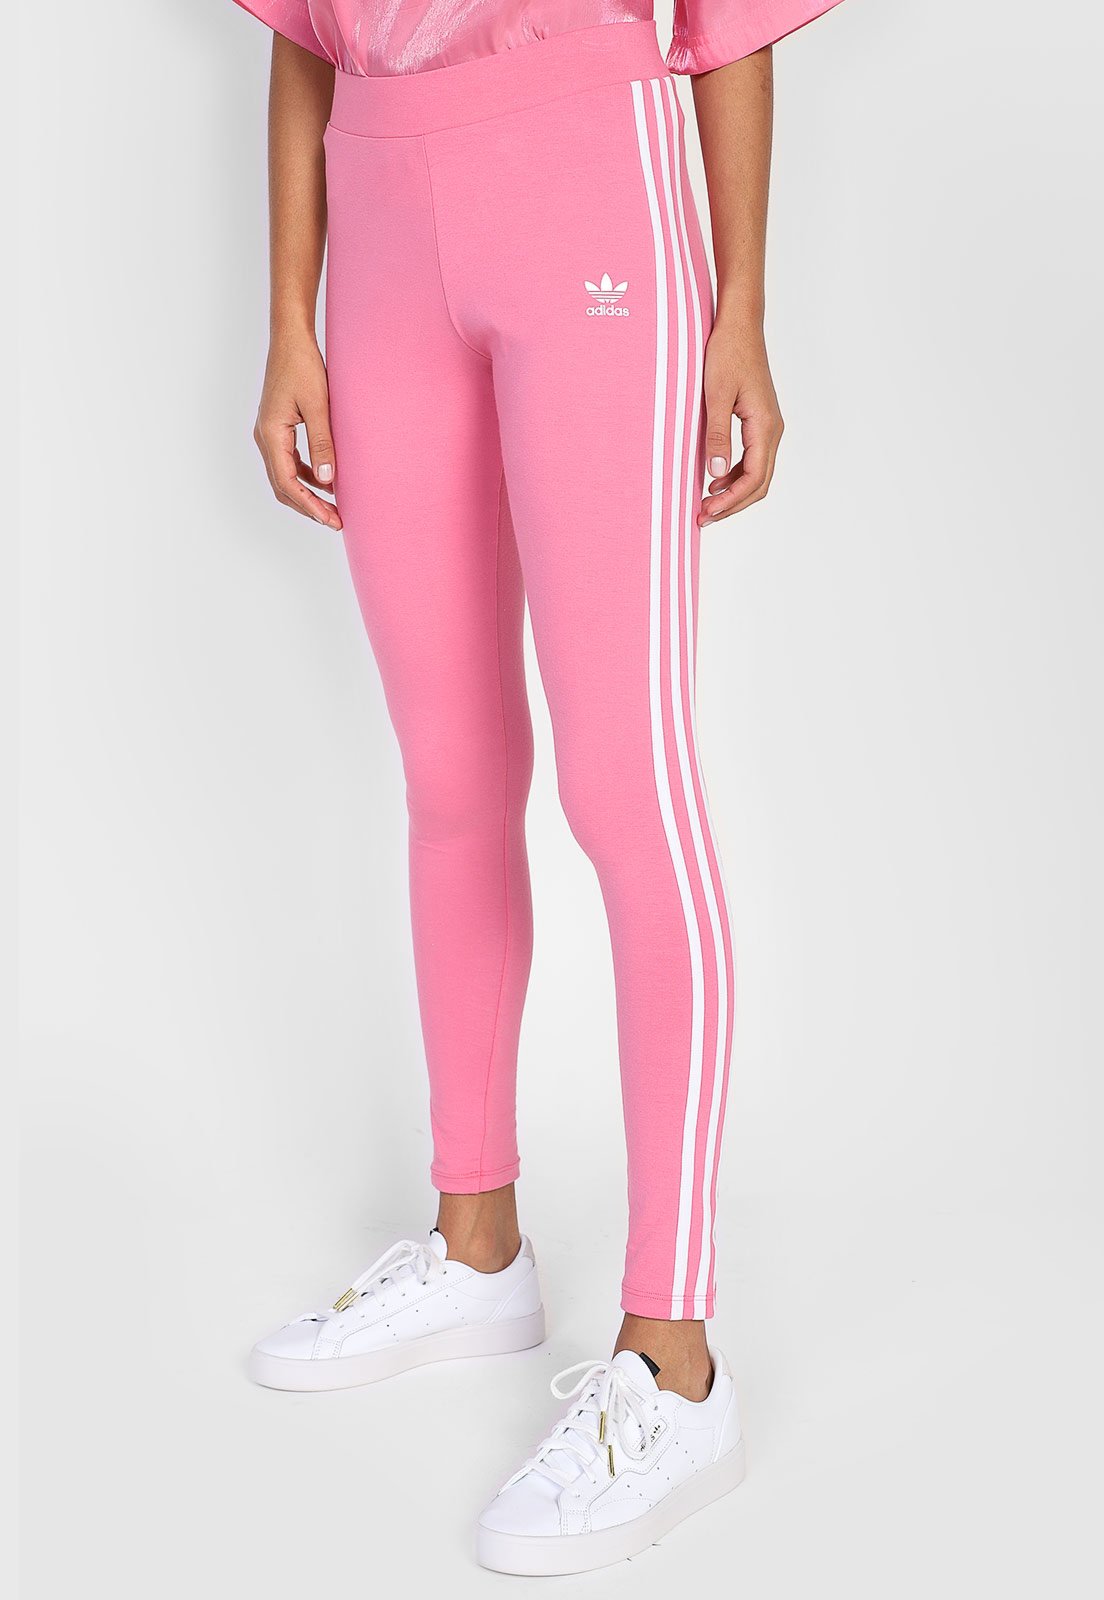 Legging adidas Originals 3 Stripes Rosa - Compre Agora